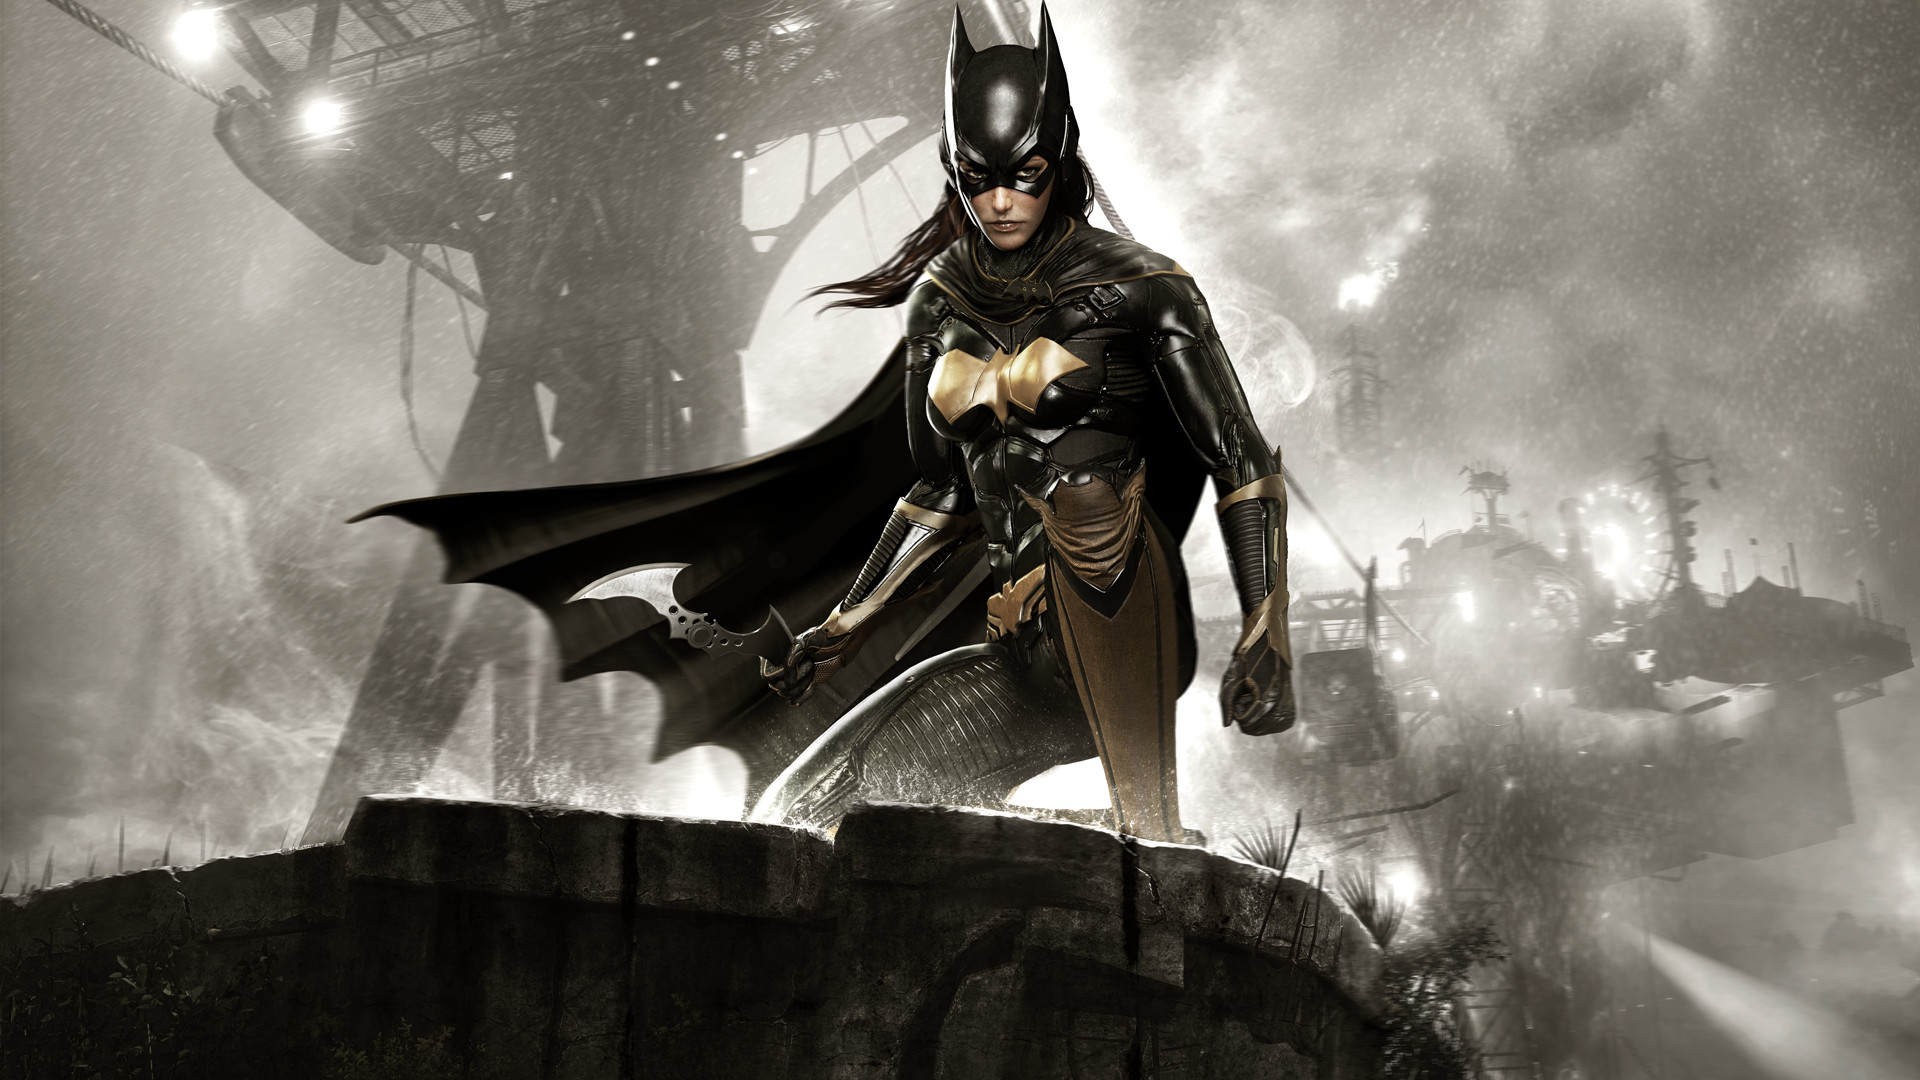 Batman™: Arkham Knight - A Matter of Family en Steam